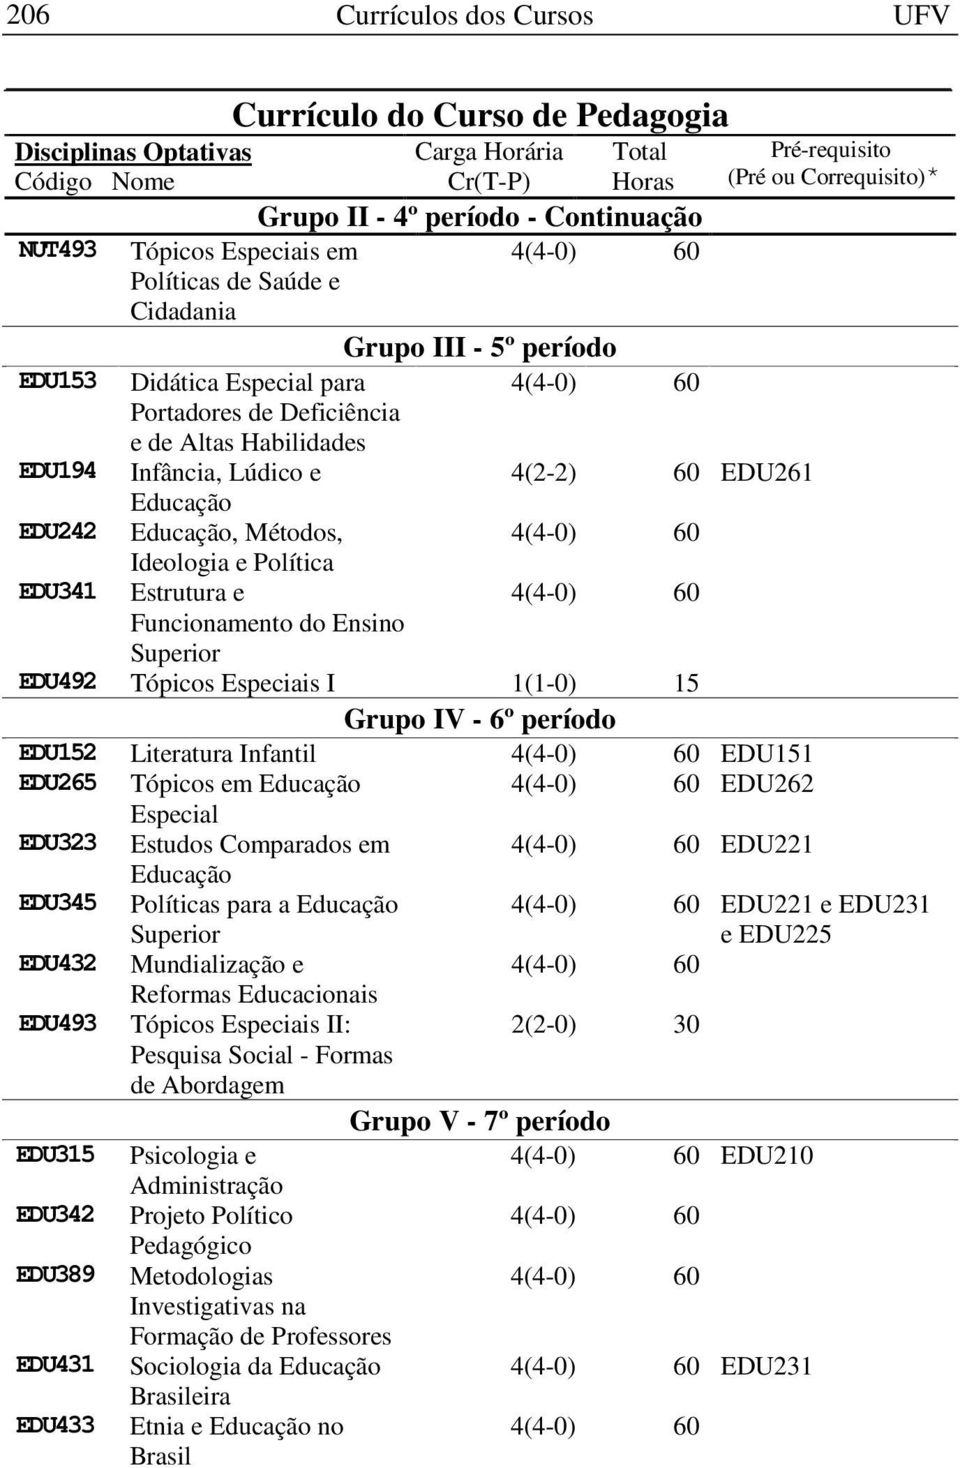 Ensino Superior EDU492 Tópicos Especiais I 1(1-0) 15 Grupo IV - 6º período EDU152 Literatura Infantil EDU151 EDU265 Tópicos em EDU262 Especial EDU323 Estudos Comparados em EDU221 EDU345 Políticas